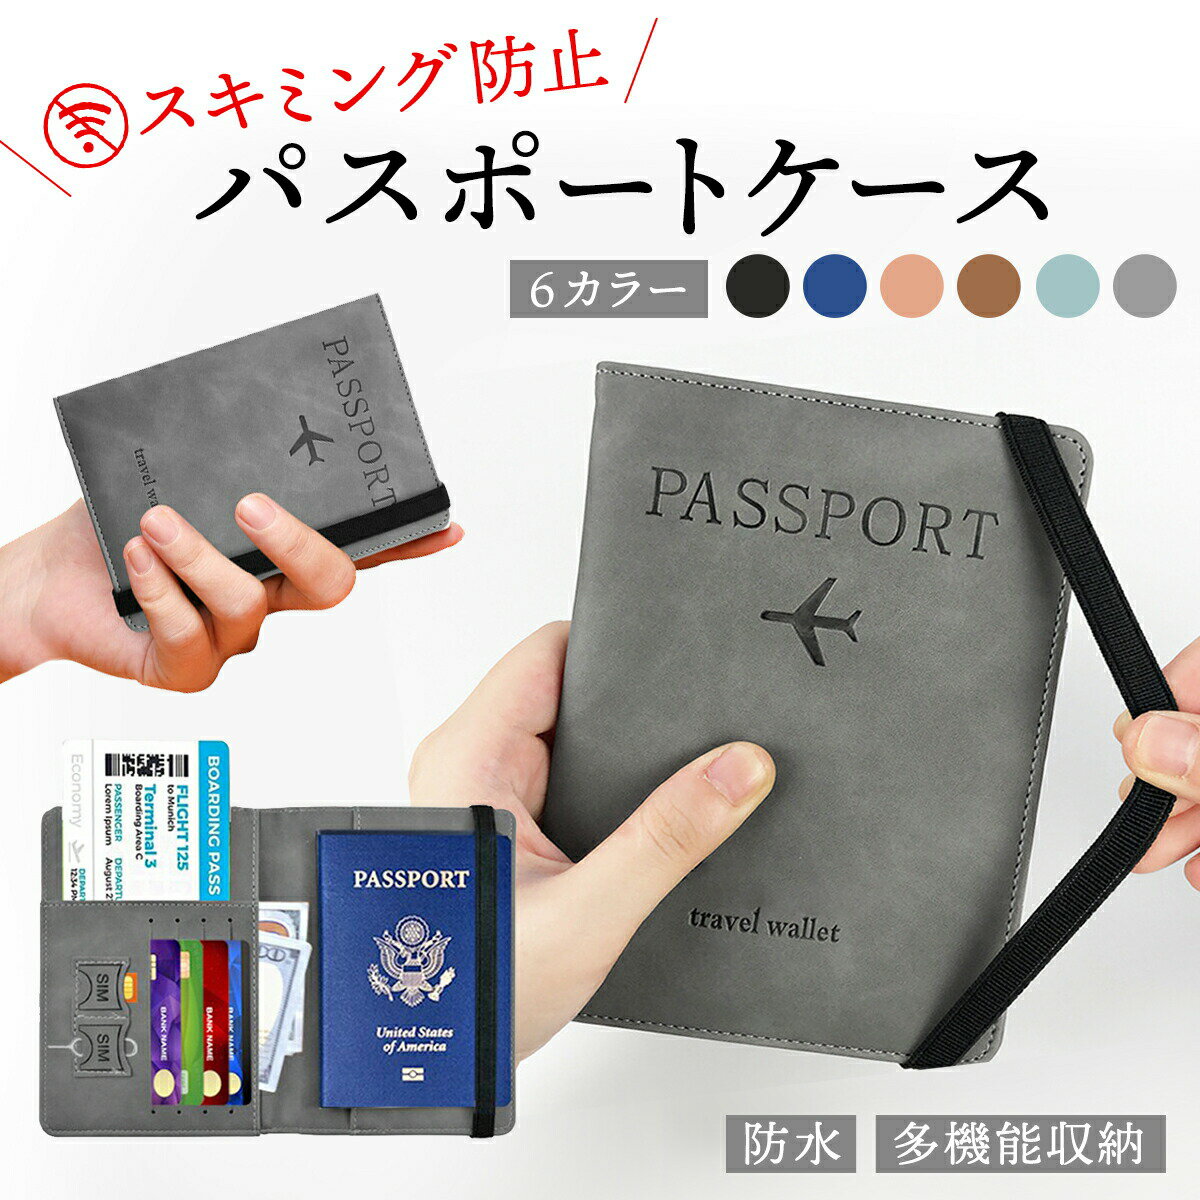 【クーポンあり】 パスポートケー